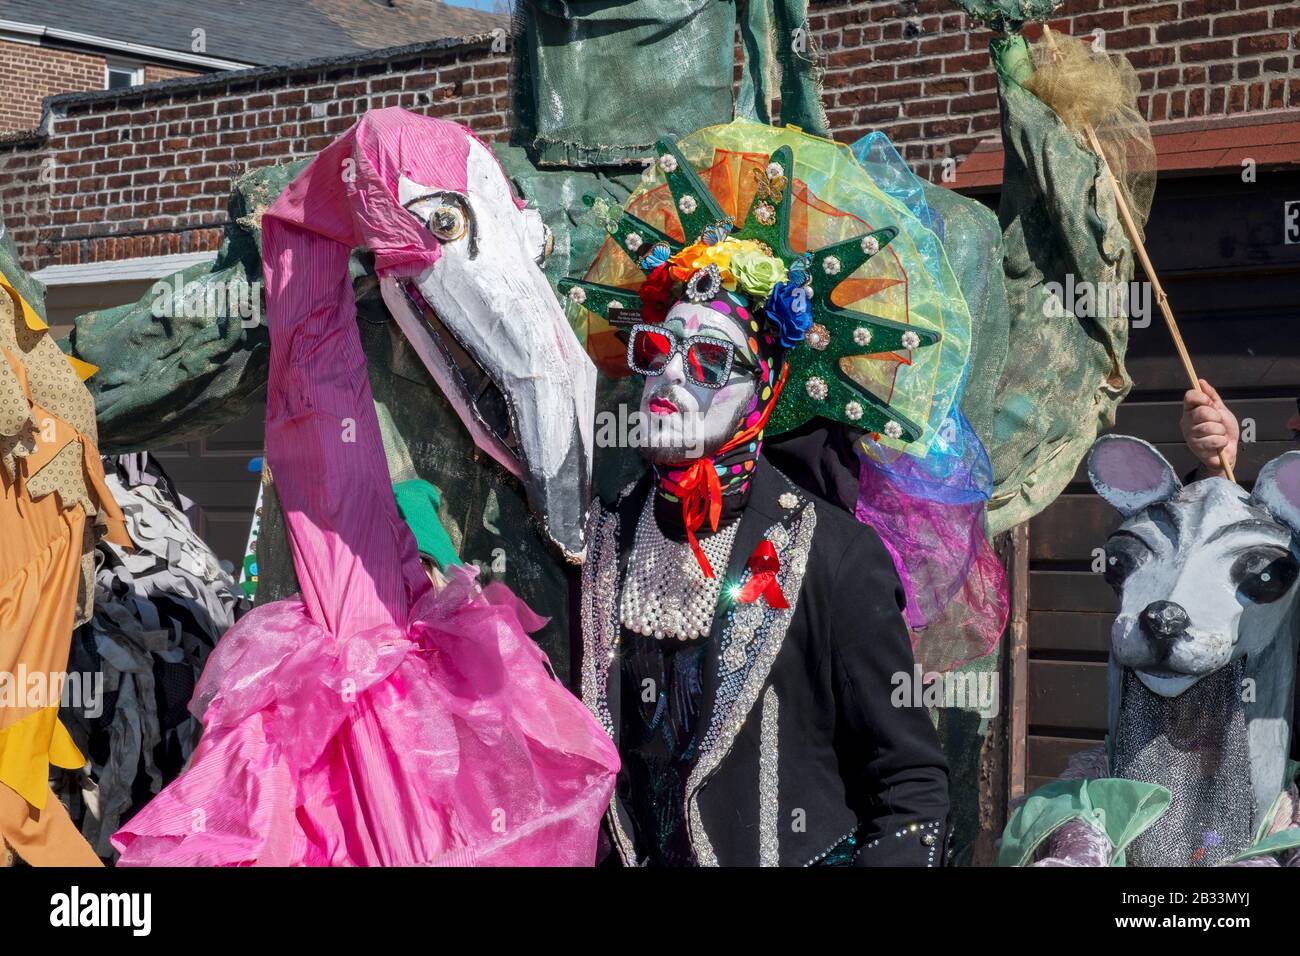 Schwester Lotti da, Performancekünstlerin und Mitglied der Sisters of Indulgence posiert mit großen überdimensionalen Marionetten. In Sunnyside, Queens, New York City. Stockfoto